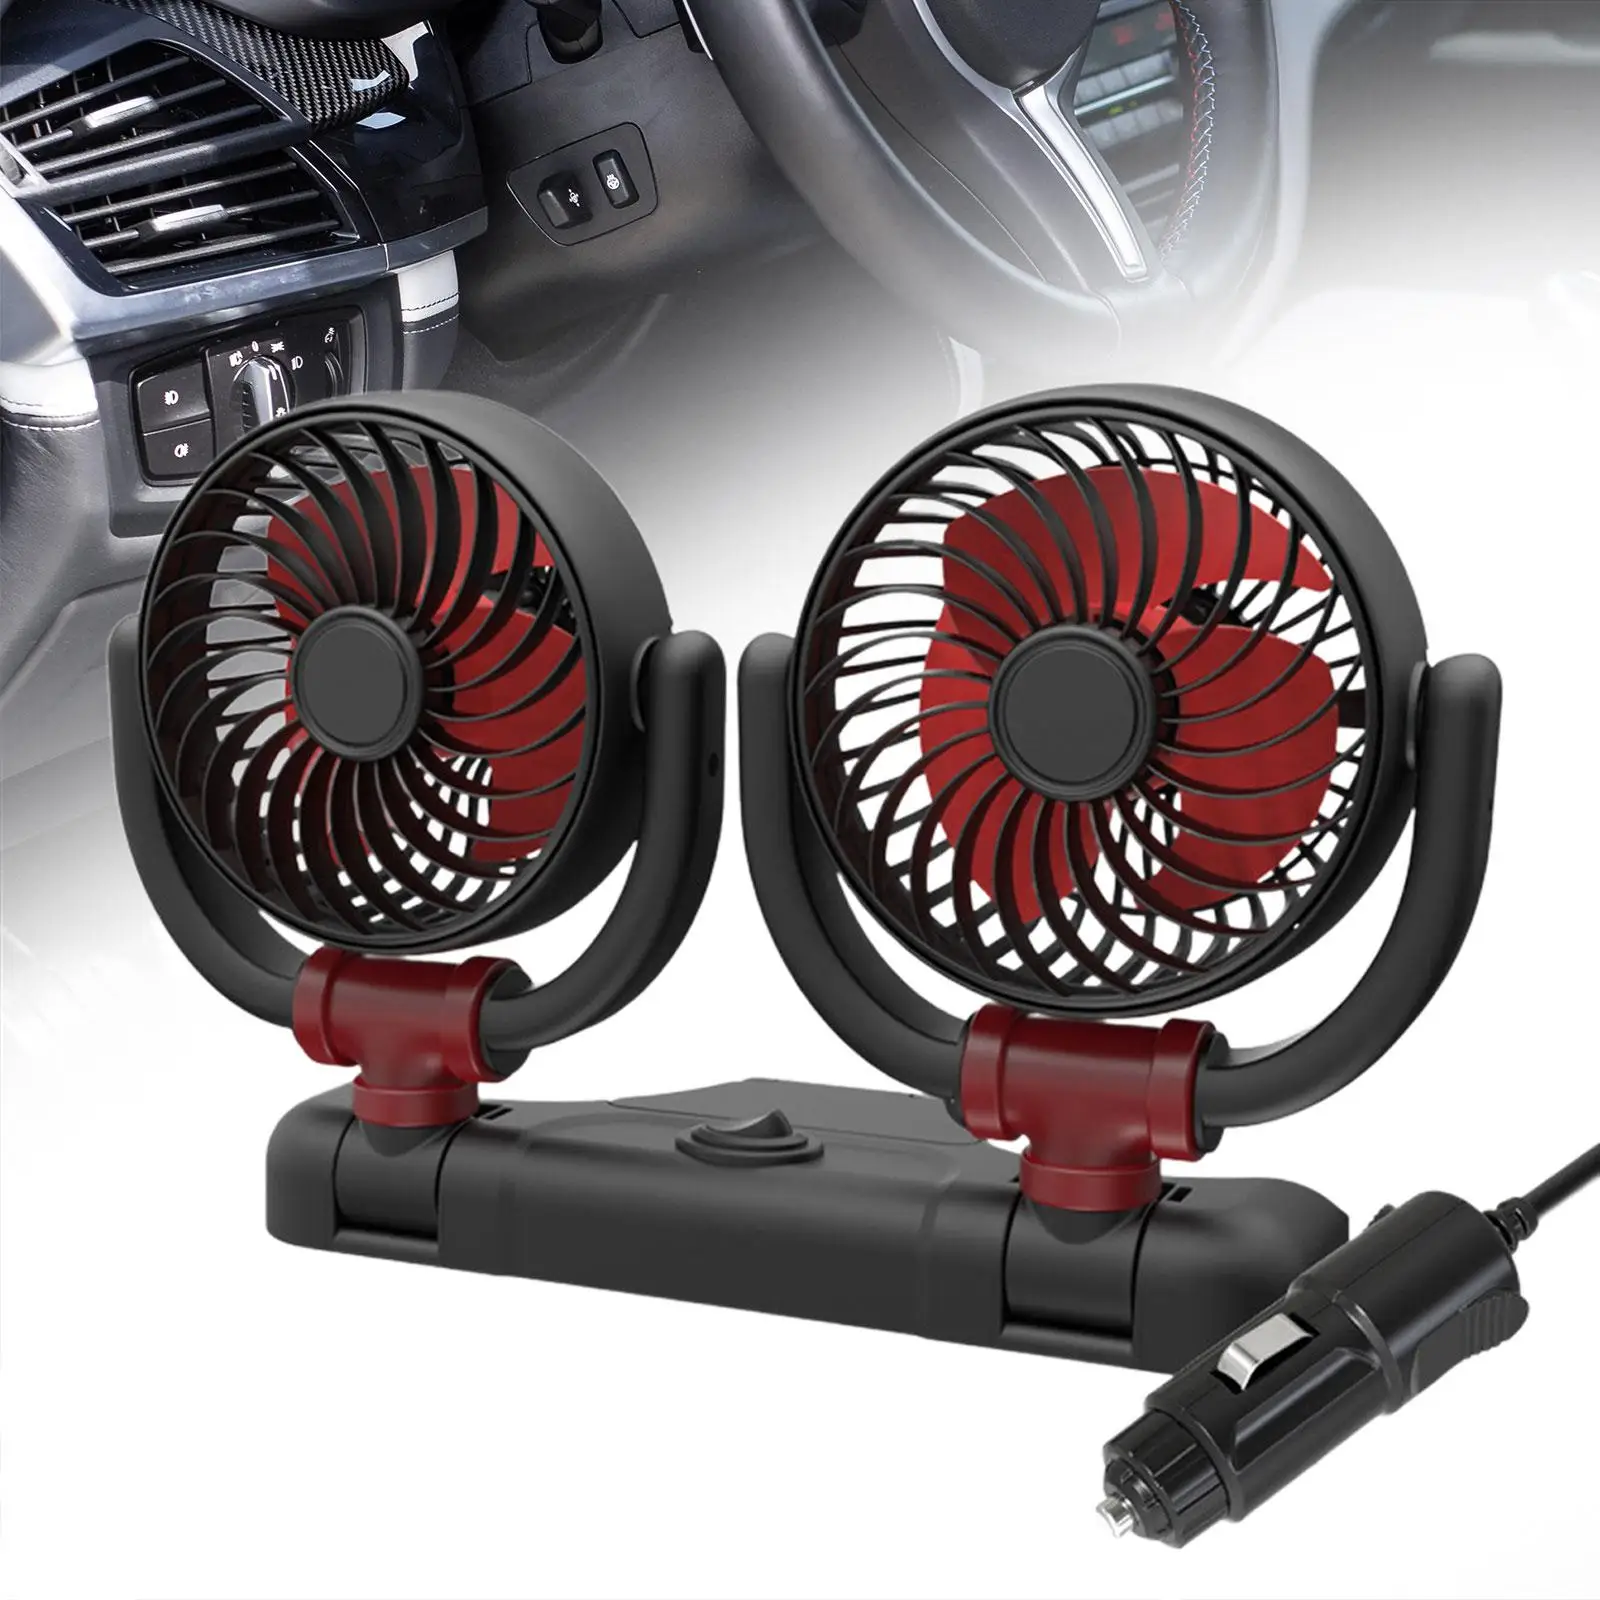 Dual Head Car Fan Portable Car Cooling Air Fan for Dashboard Home RV